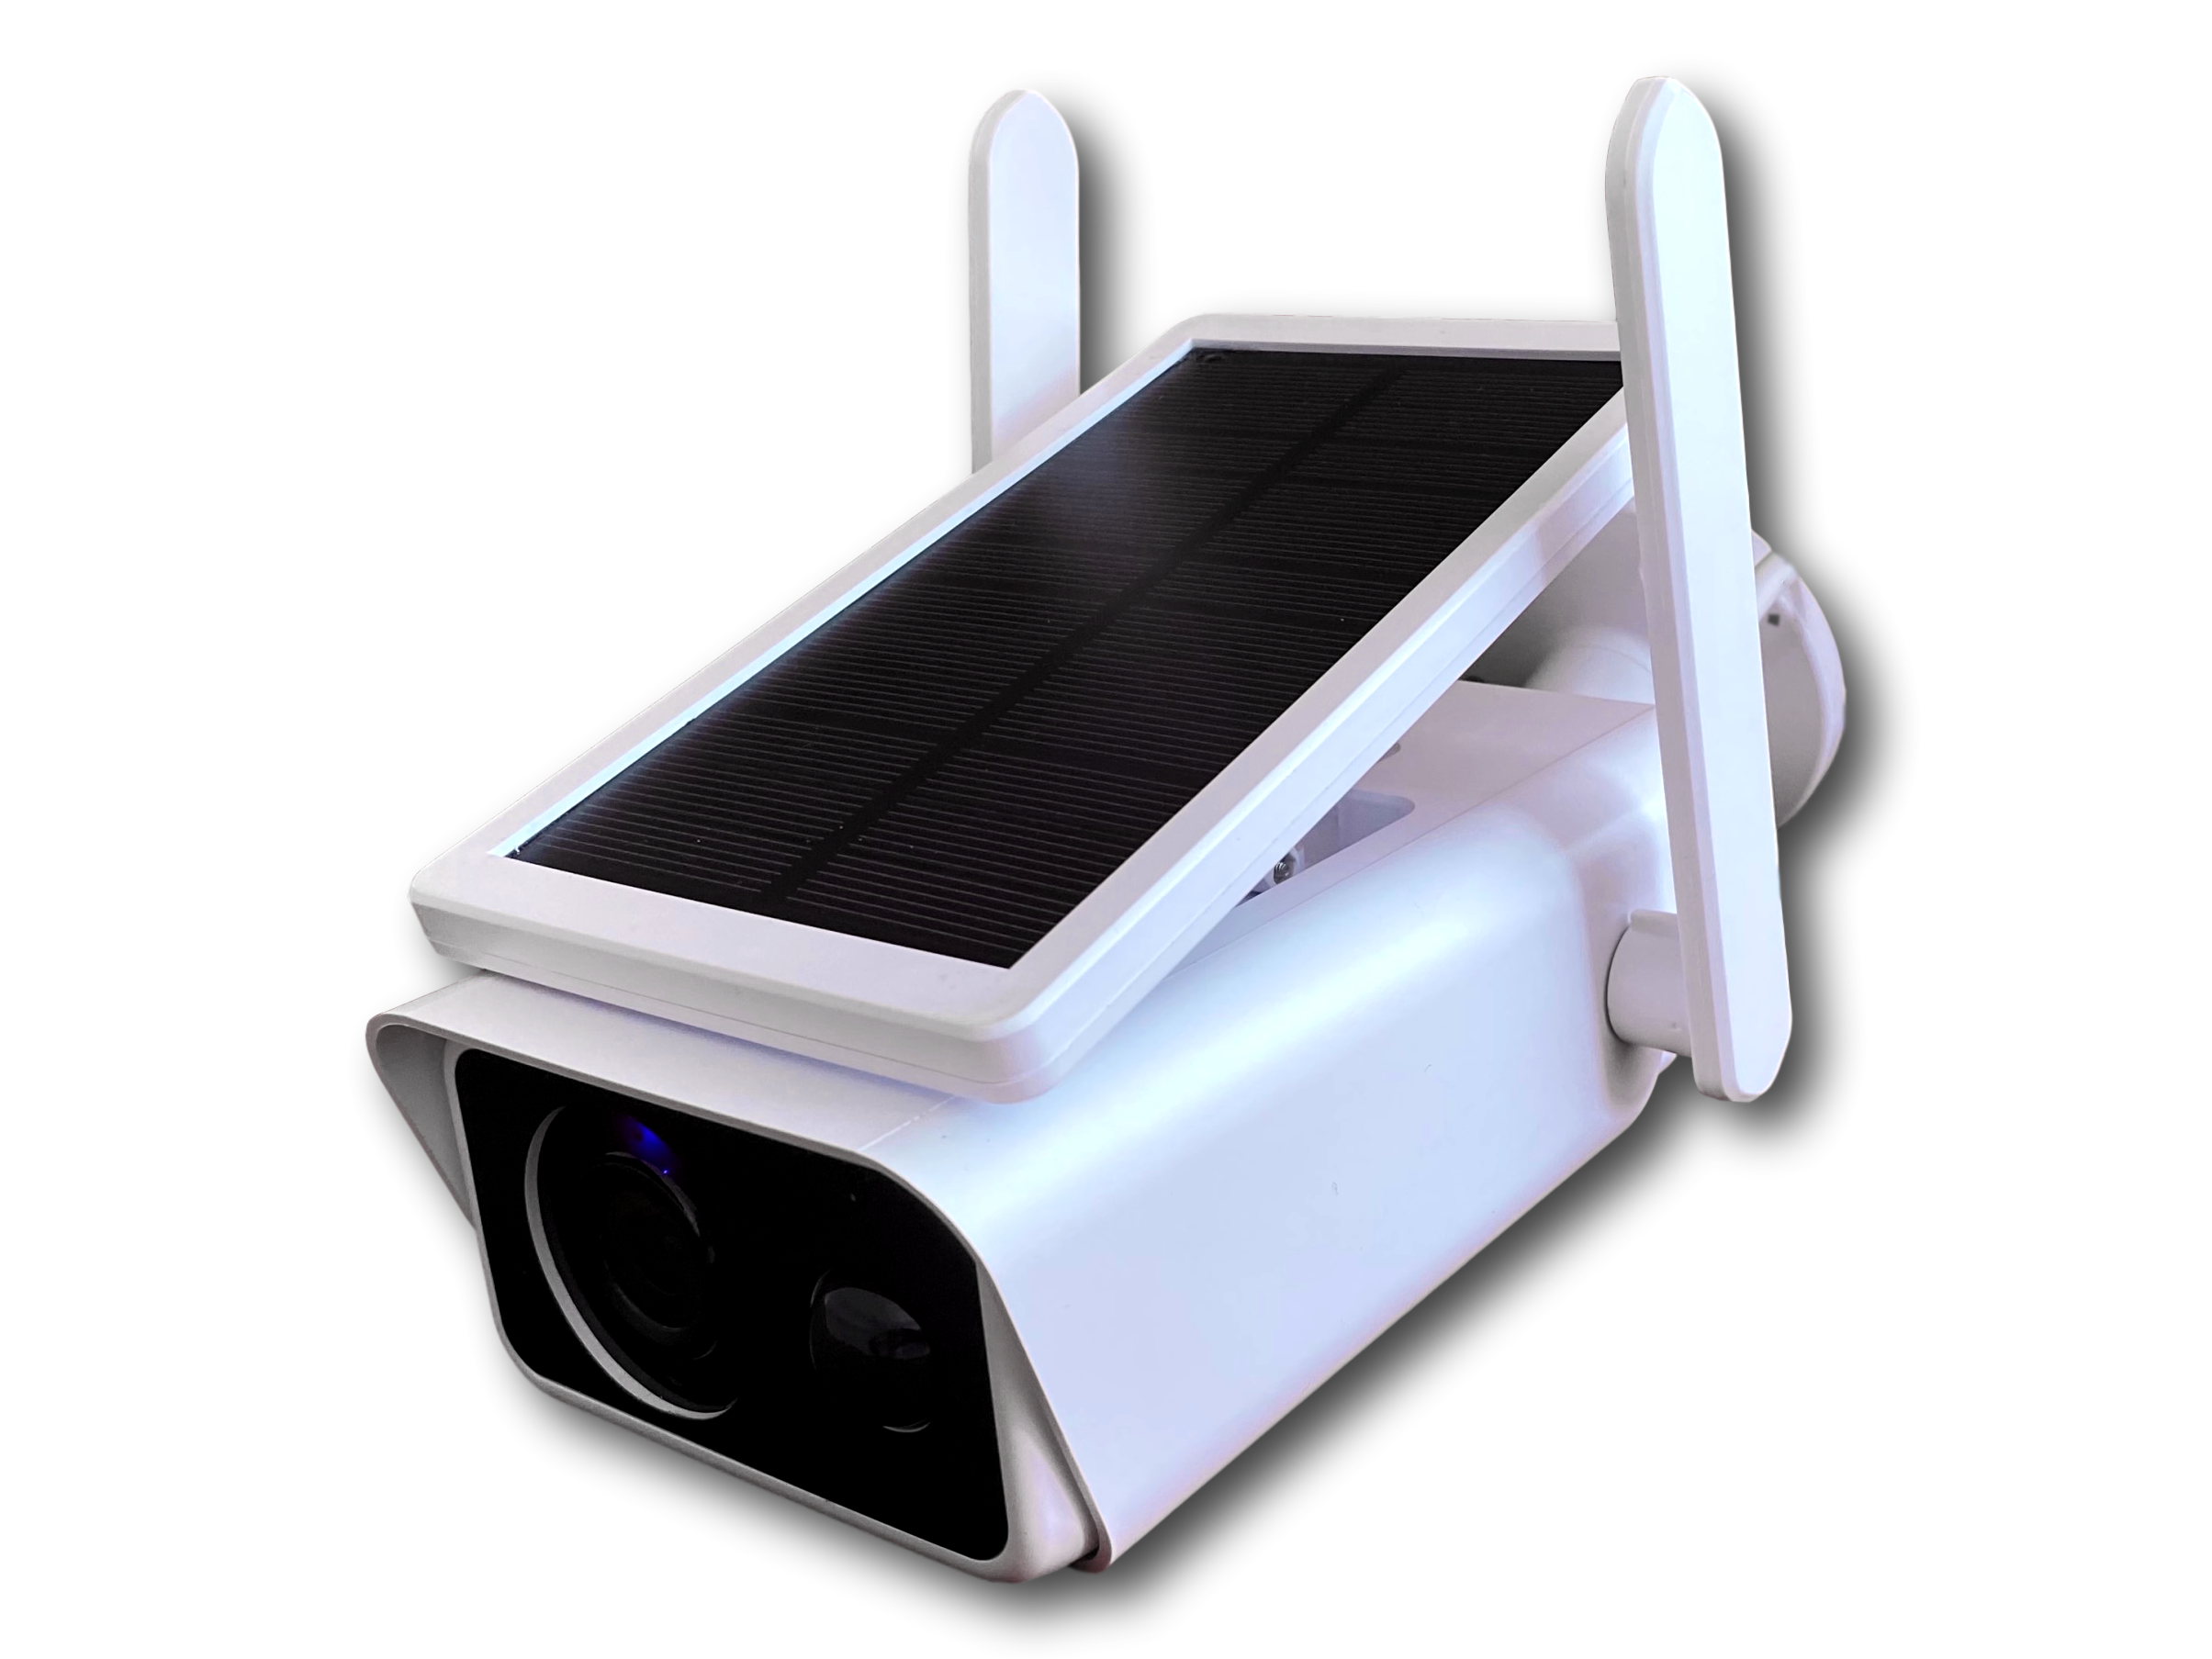 Camara WiFi para vigilancia con doble lente – Yupi Solar